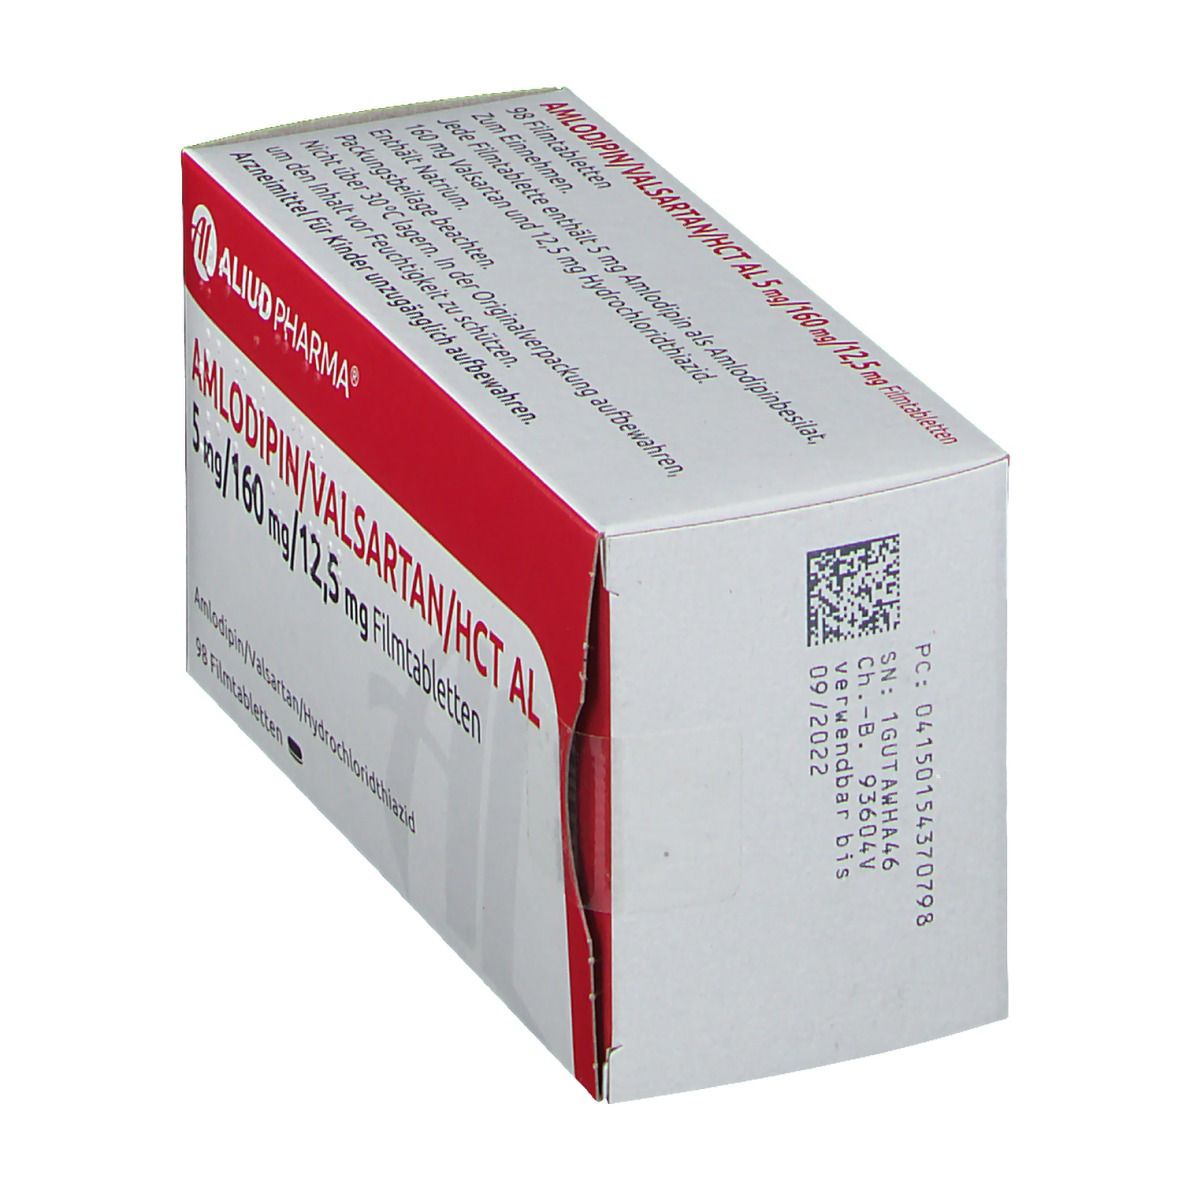 Amlodipin/Valsartan/HCT AL 5 mg/160 mg/12,5 mg